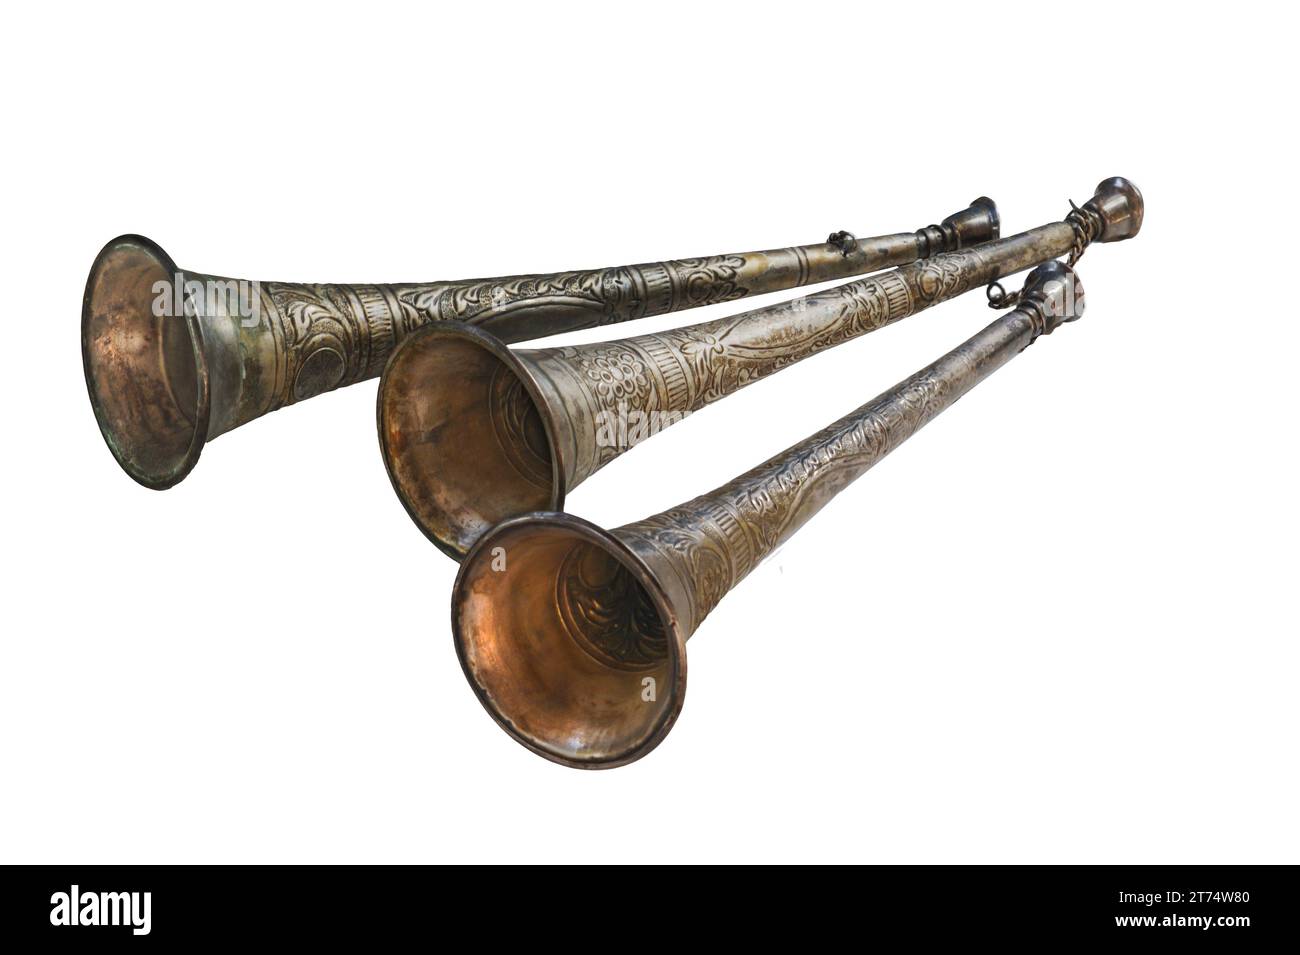 Drei Trompetenhörner zeigen ein ausgefallenes silberfarbenes Design, ein Musikpreisinstrument, das vor über 100 Jahren an den Feuerwehrmann verliehen wurde. Stockfoto